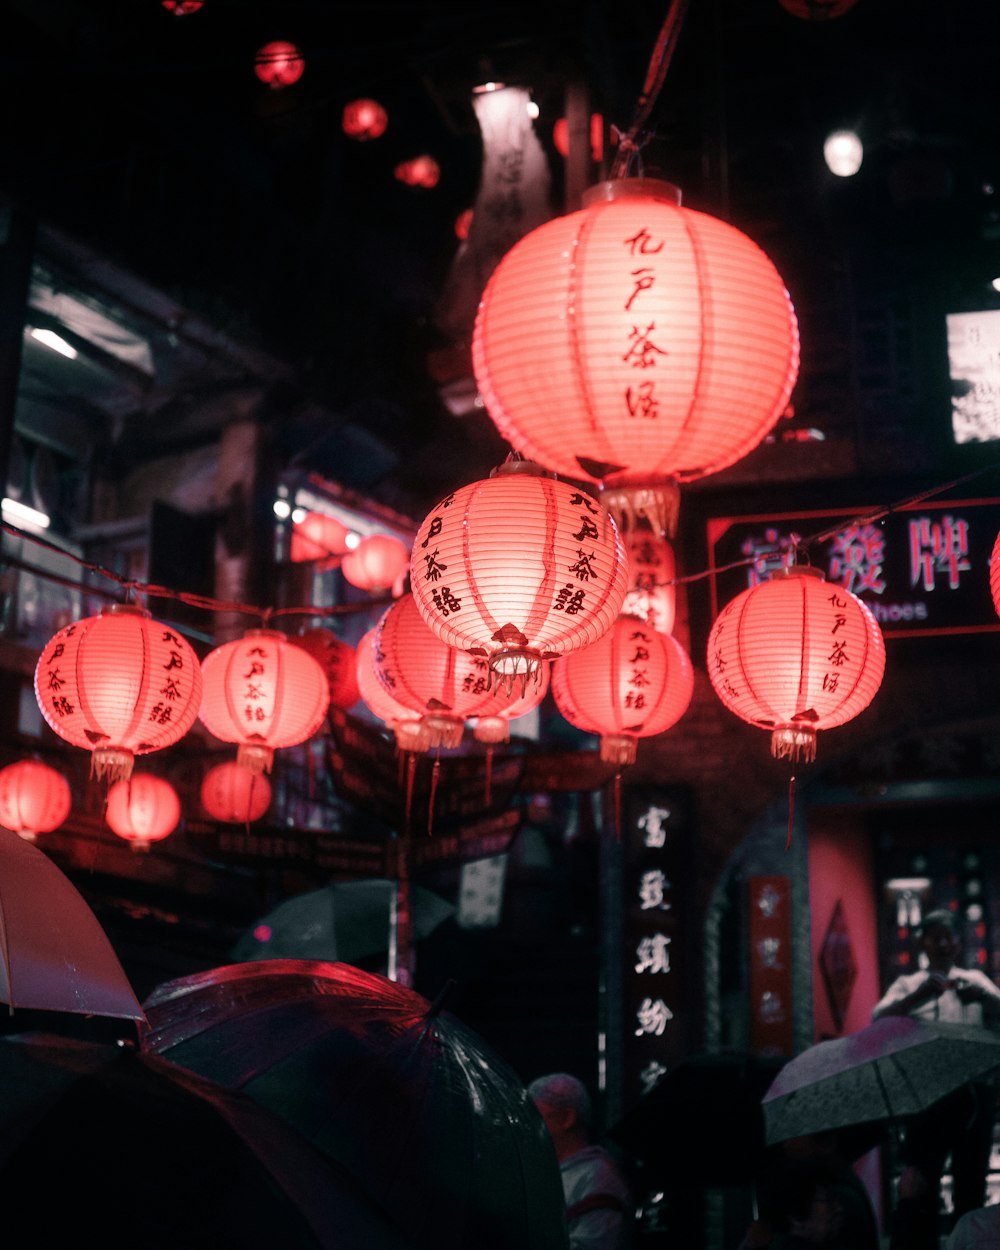 lanterna di carta rossa sulla strada durante la notte